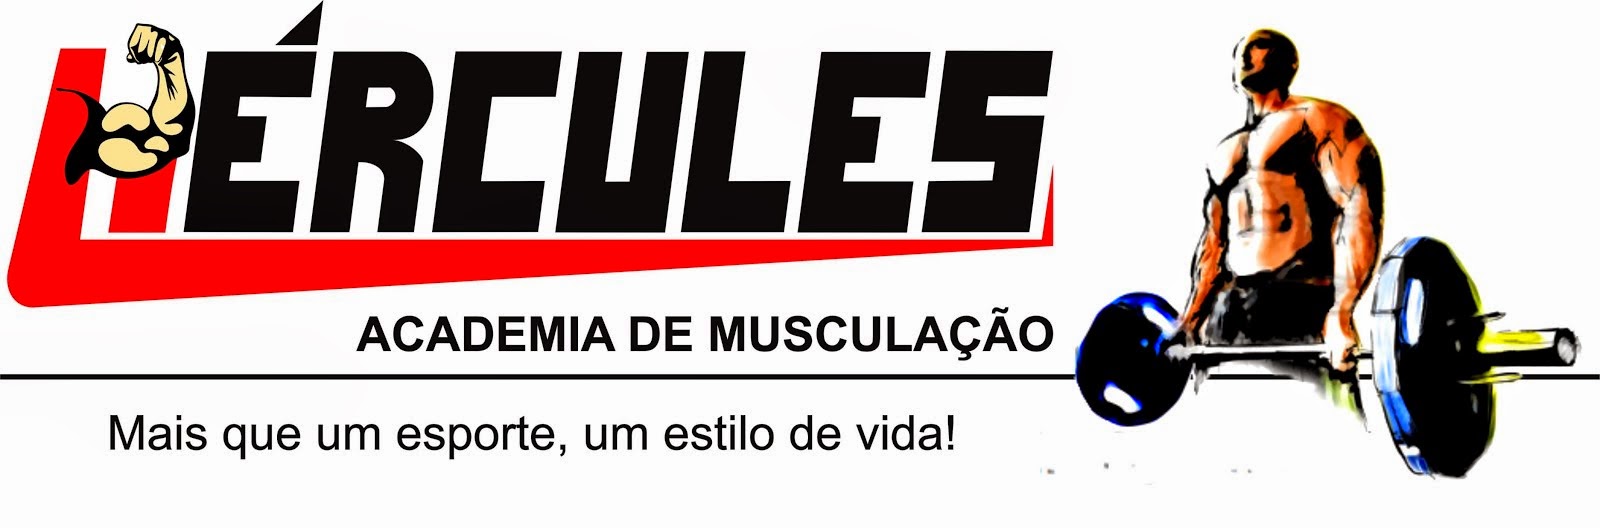 Hércules    -   Academia de Musculação